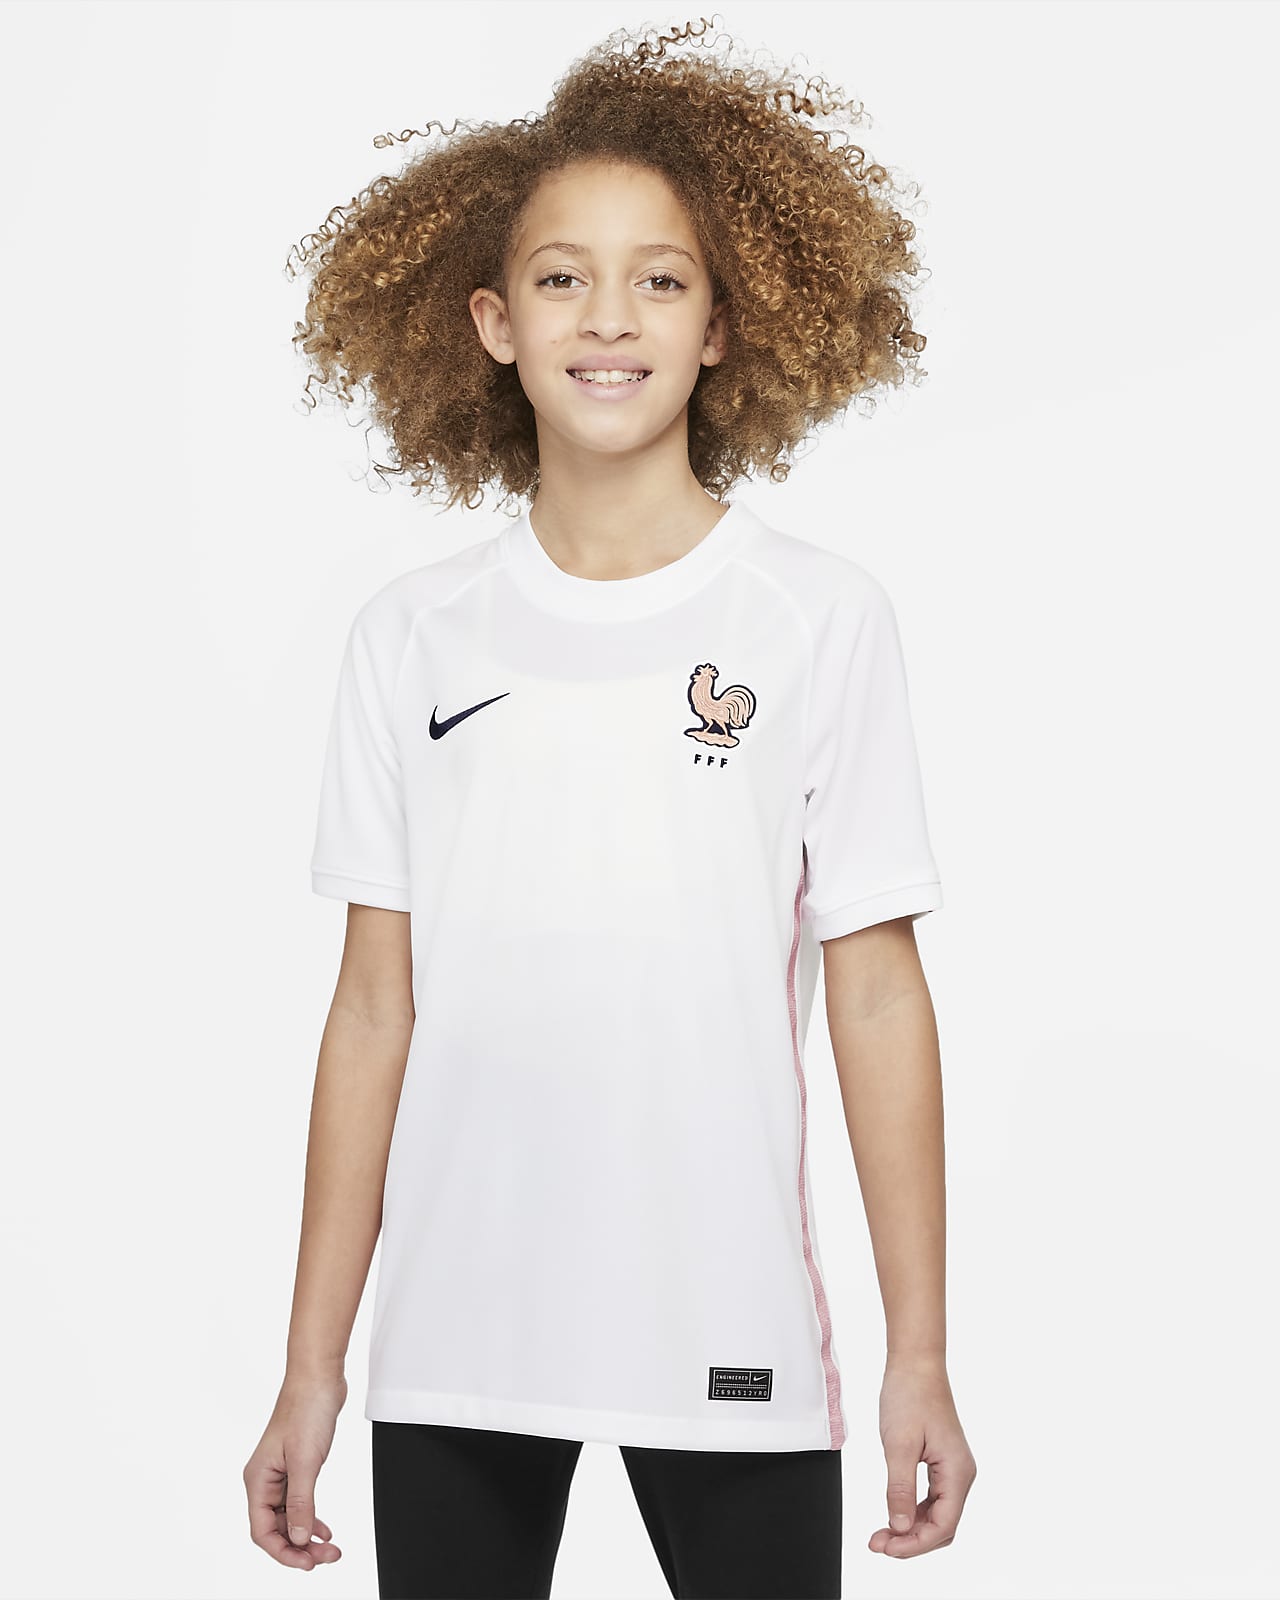 Ποδοσφαιρική φανέλα Nike Dri-FIT εκτός έδρας Γαλλική Ομοσπονδία Ποδοσφαίρου 2022 Stadium για μεγάλα παιδιά